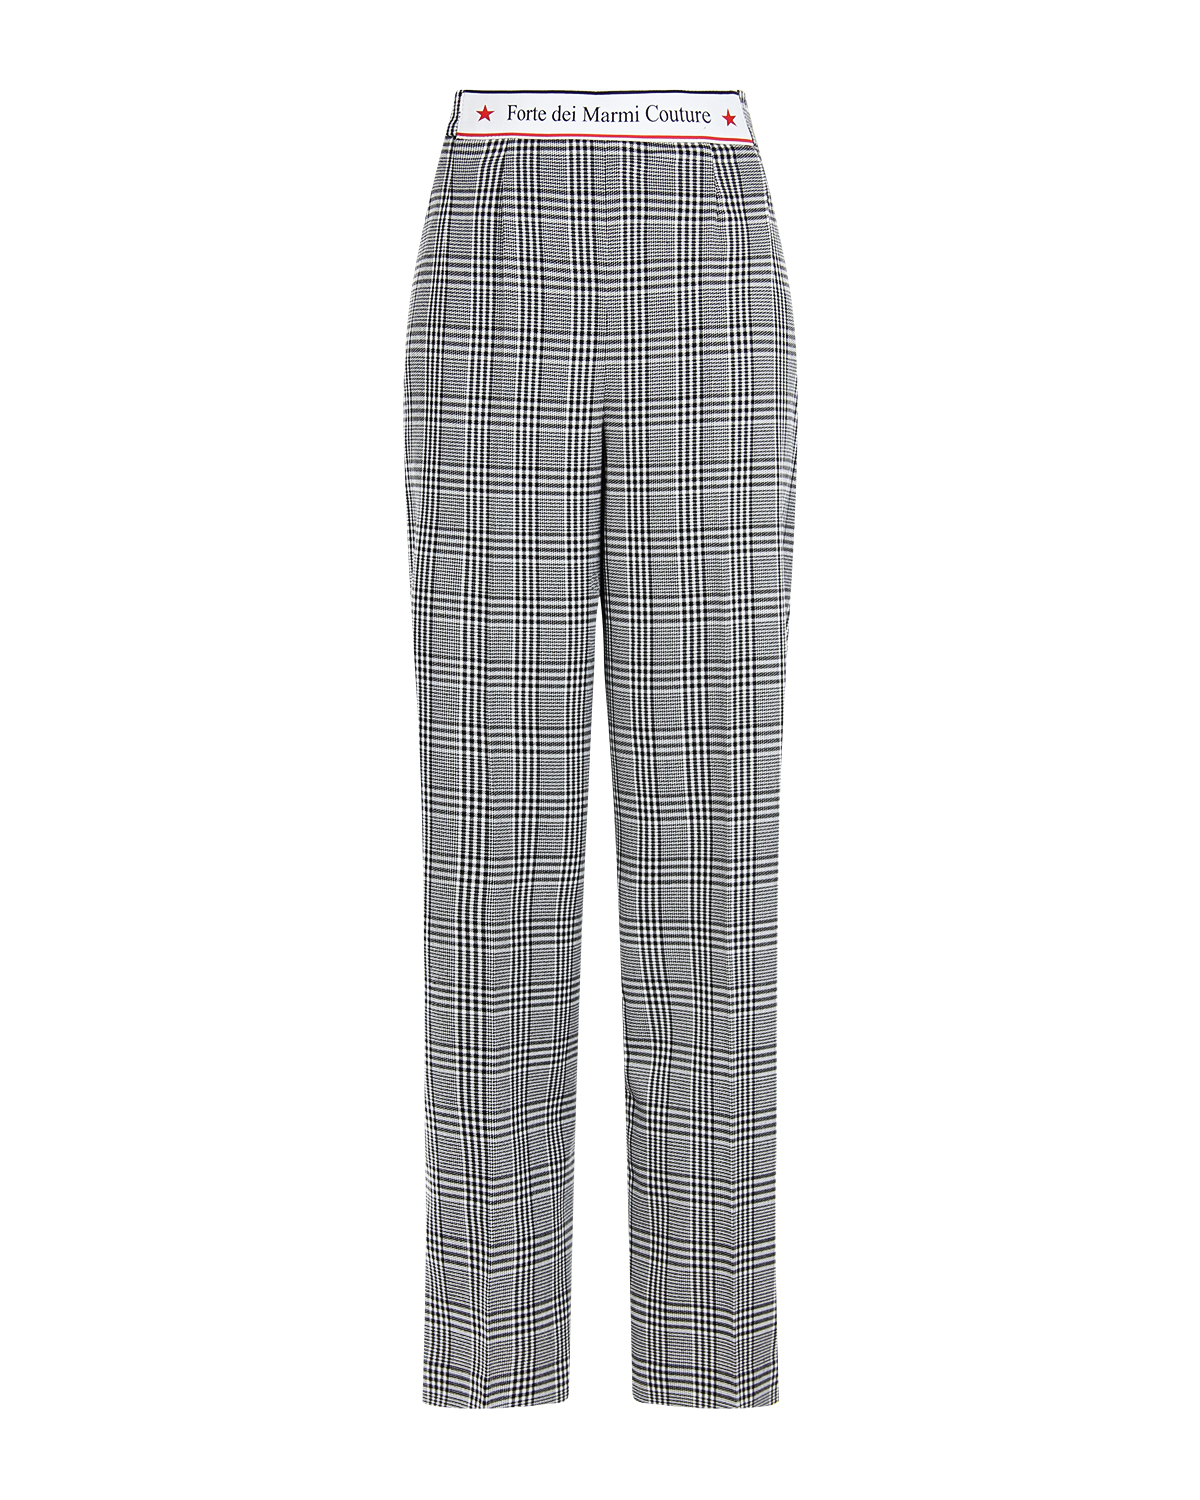 Прямые брюки в клетку Forte dei Marmi Couture, размер 42, цвет серый - фото 1